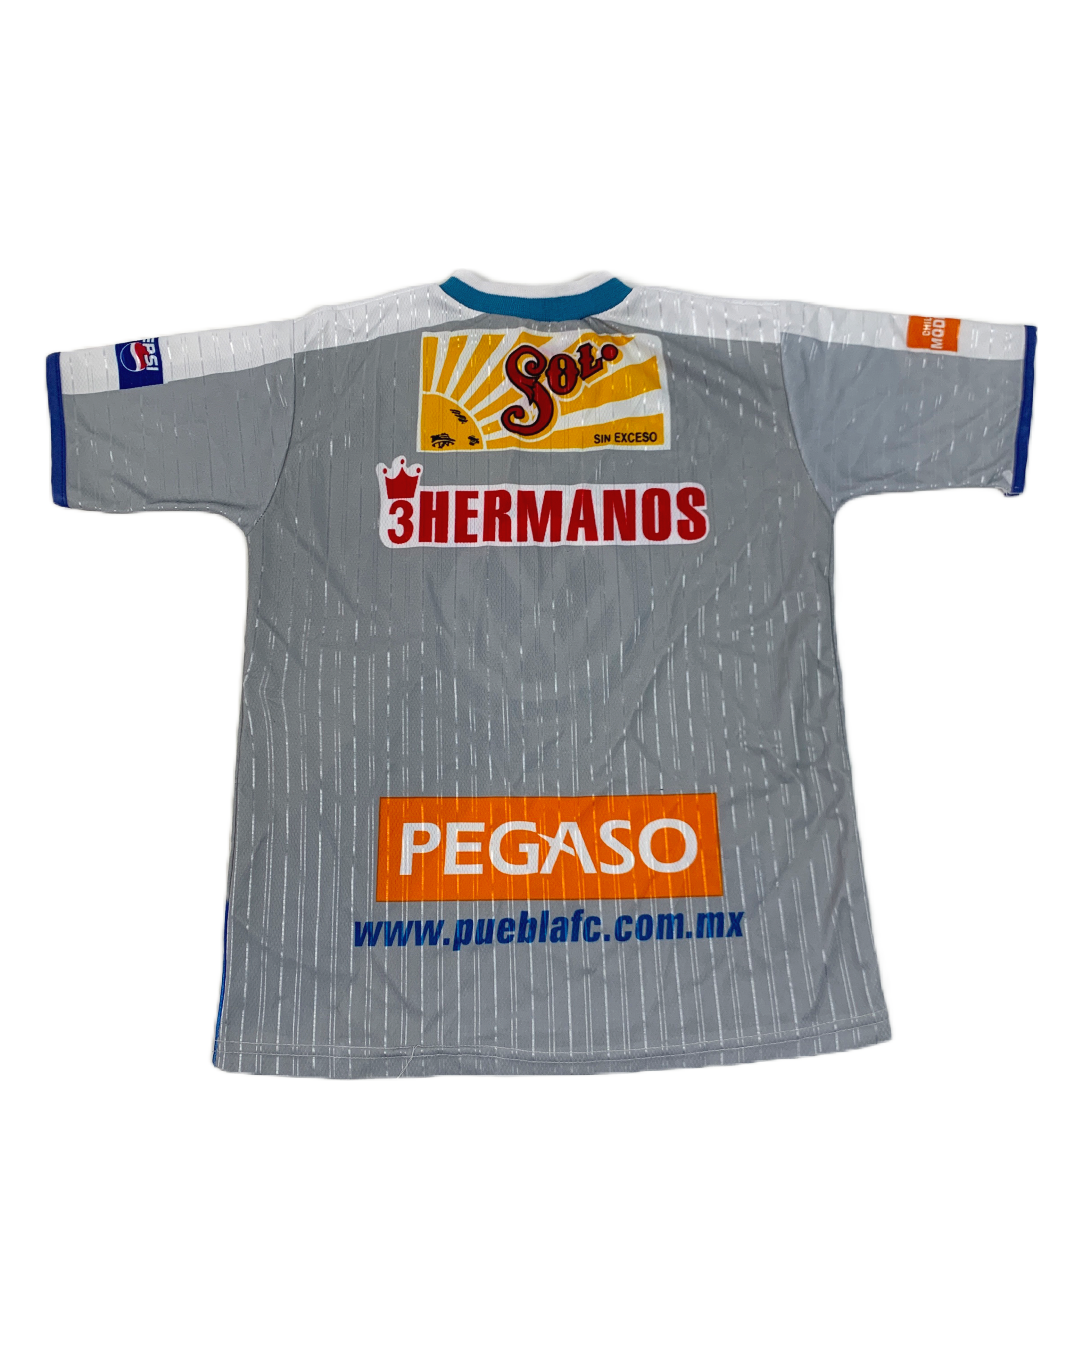 Jersey Puebla FC 2001 Vintage - L